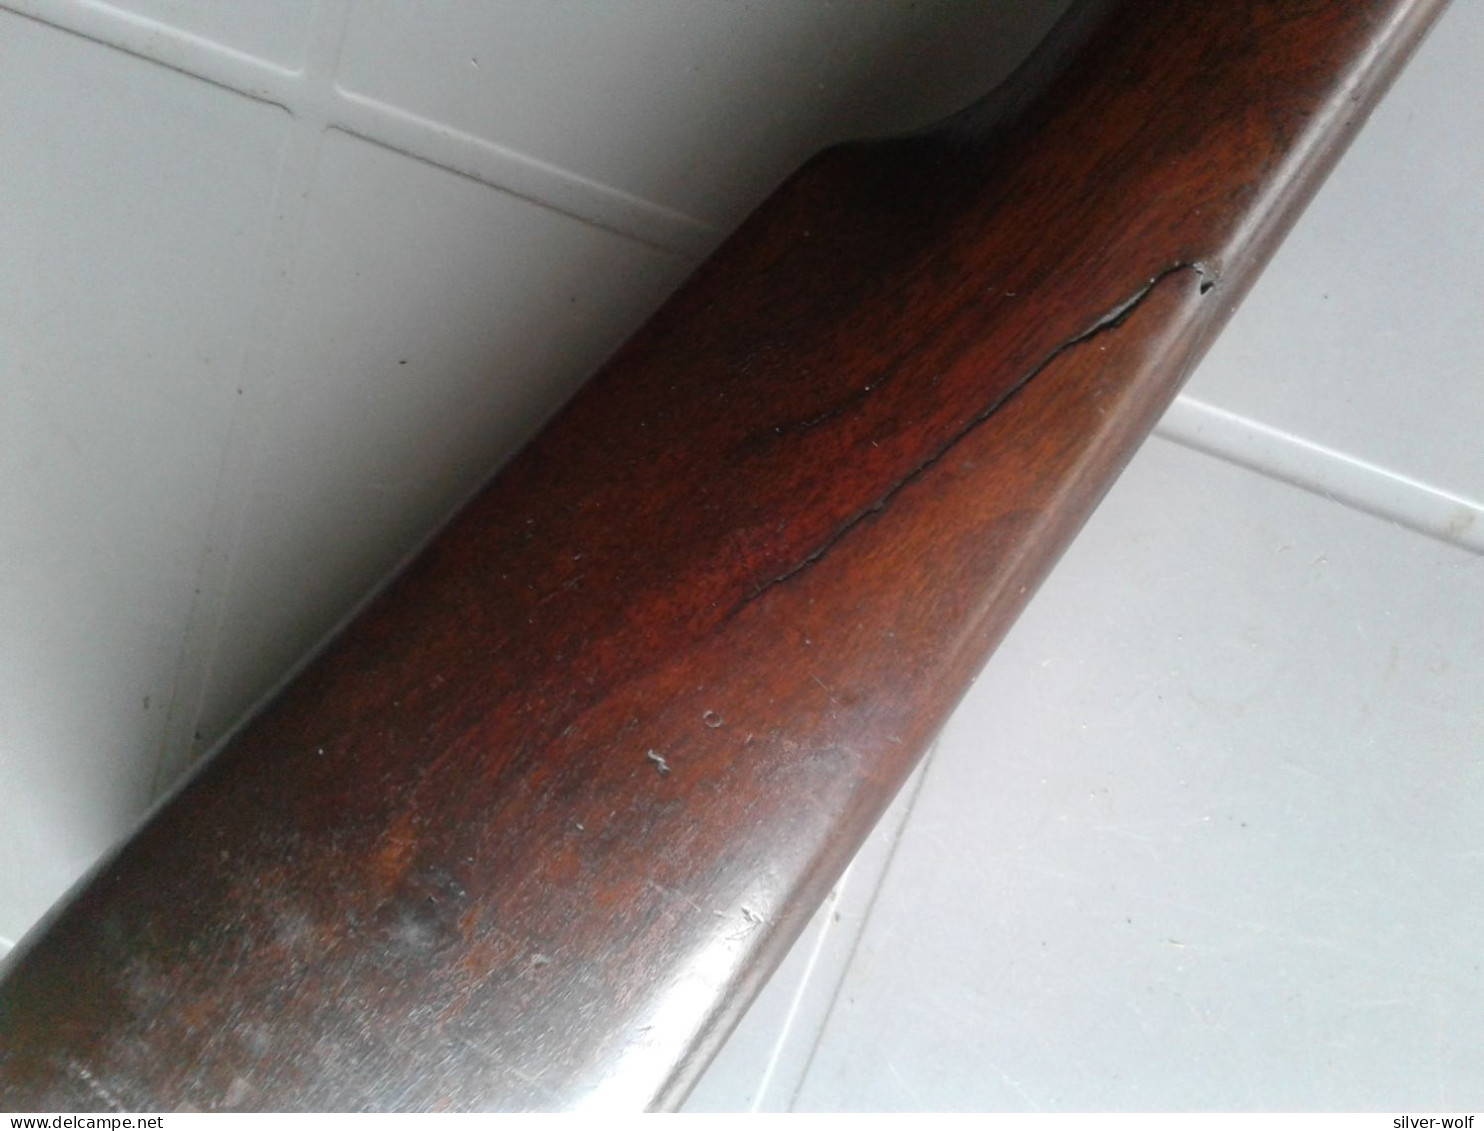 Ancienne carabine de braconnier en calibre 20 à broches